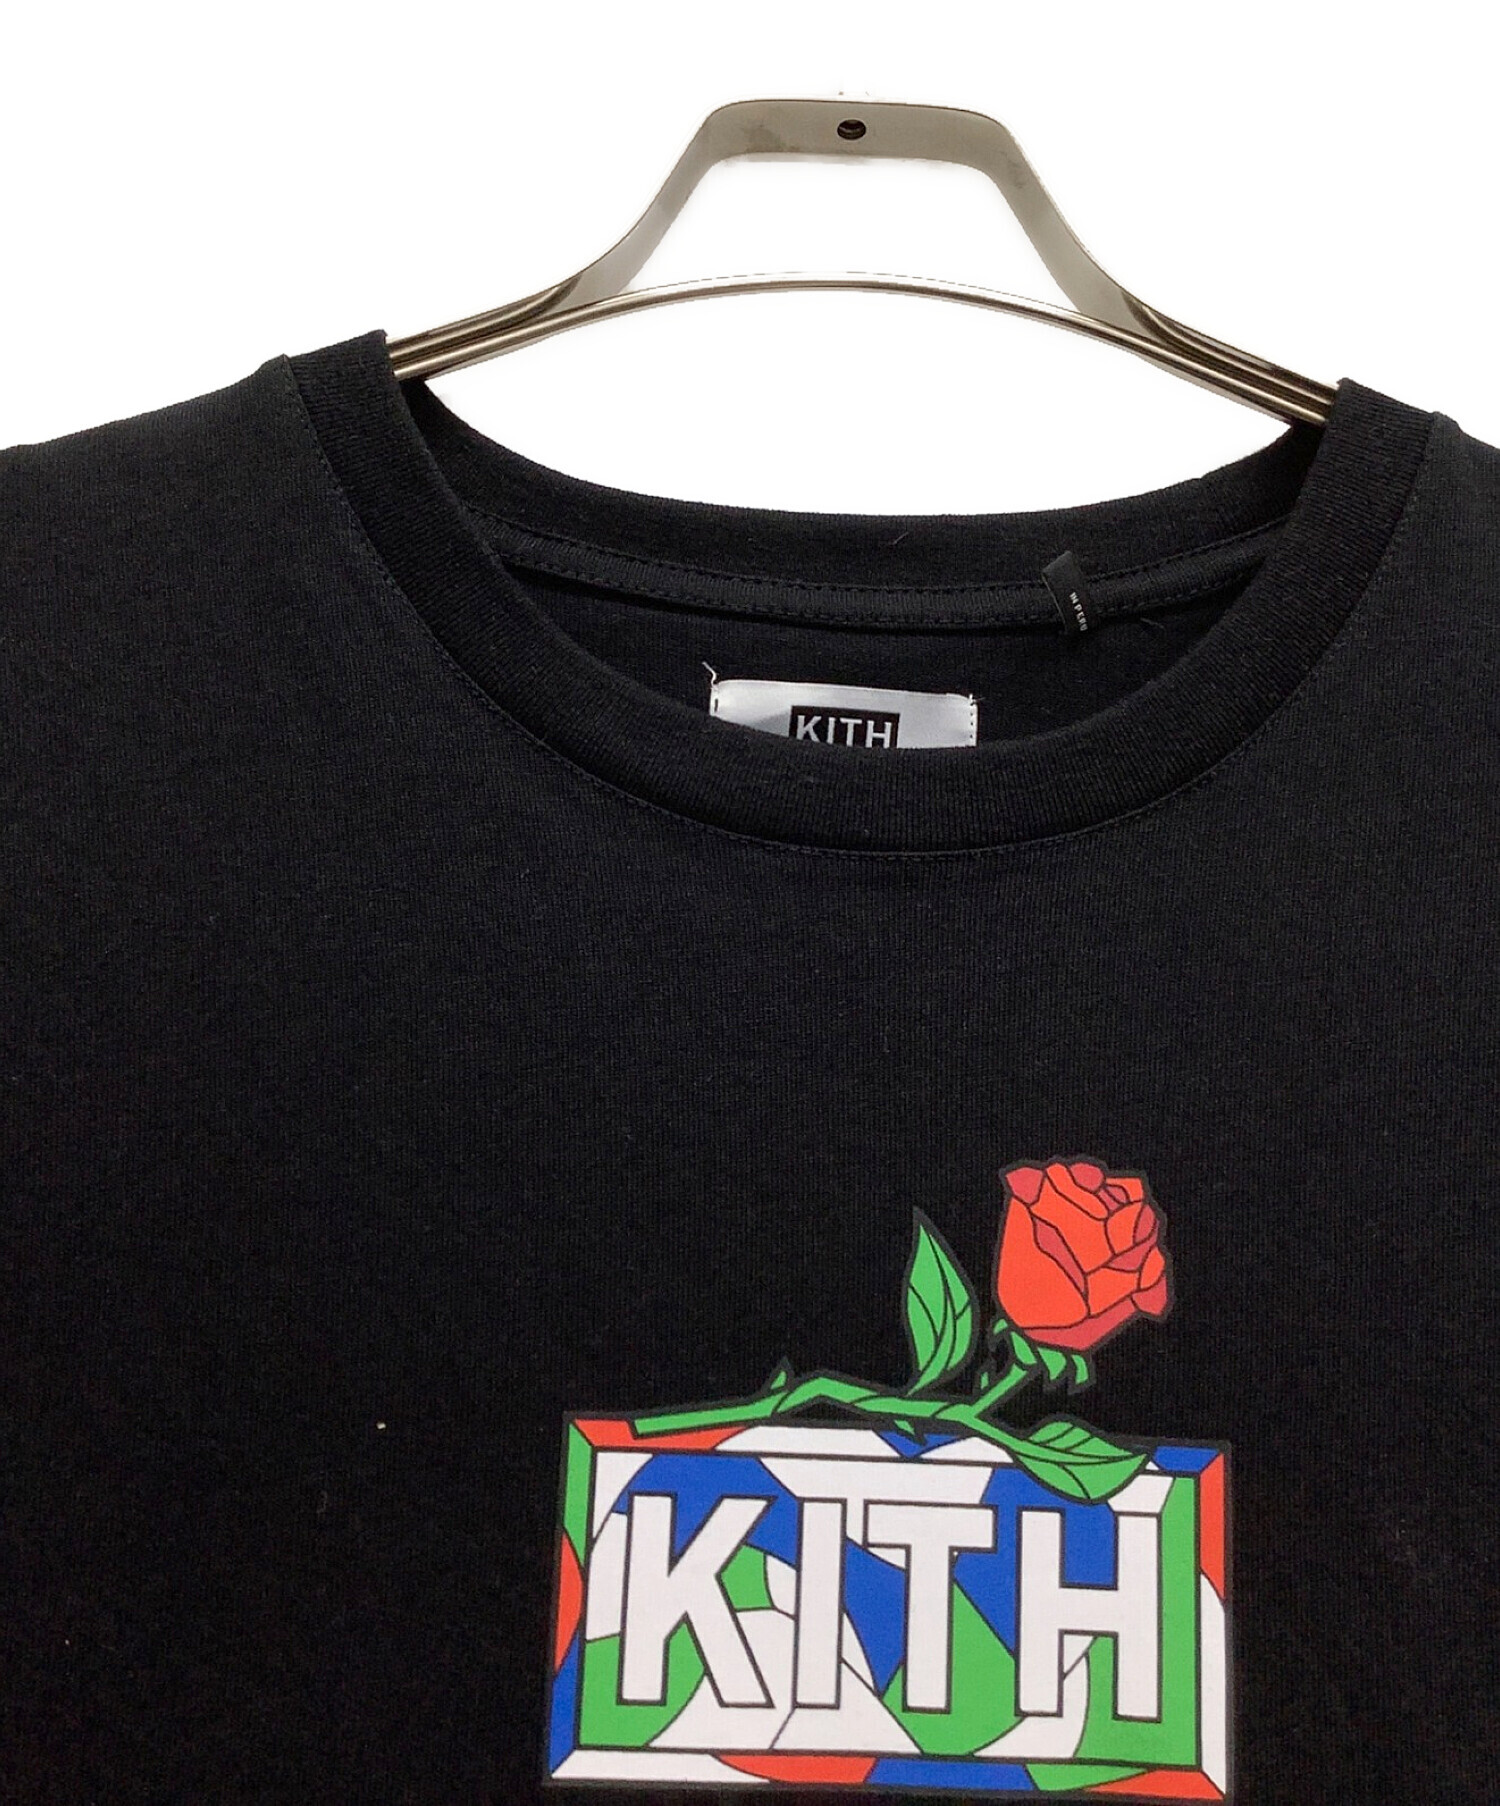 KITH (キス) ボックスロゴT ブラック サイズ:L